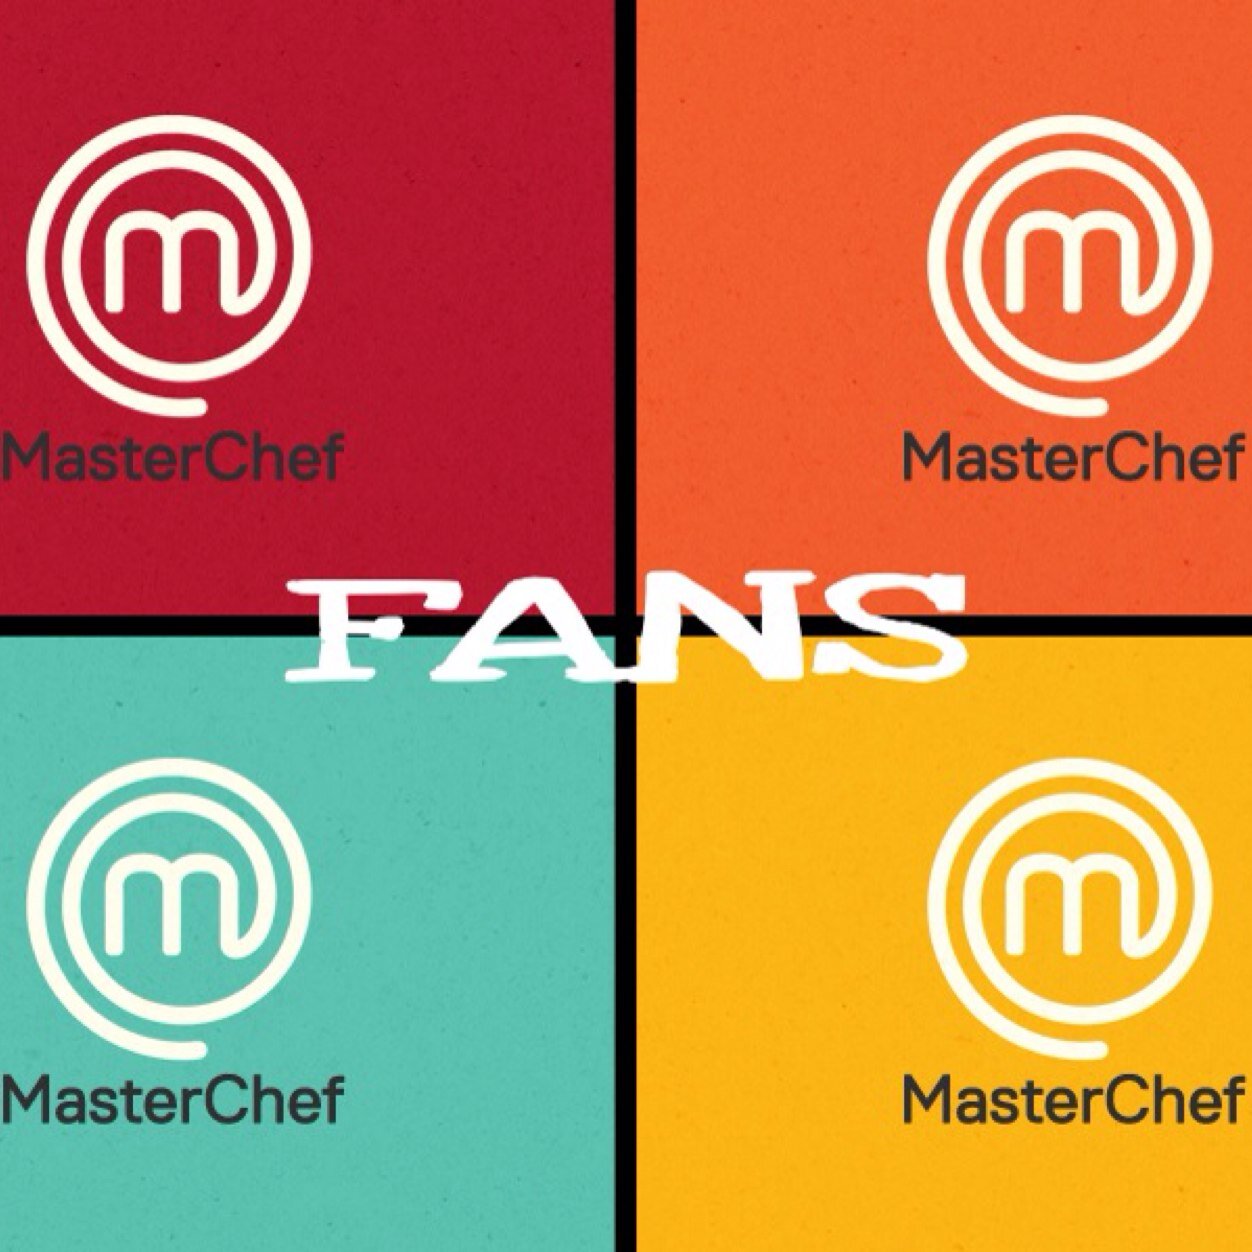 Cuenta de Fans del progama líder de audiencia Master Chef, ¿Tu también eres fan? Siguenos y te enterarás de todo sobre el programa!!